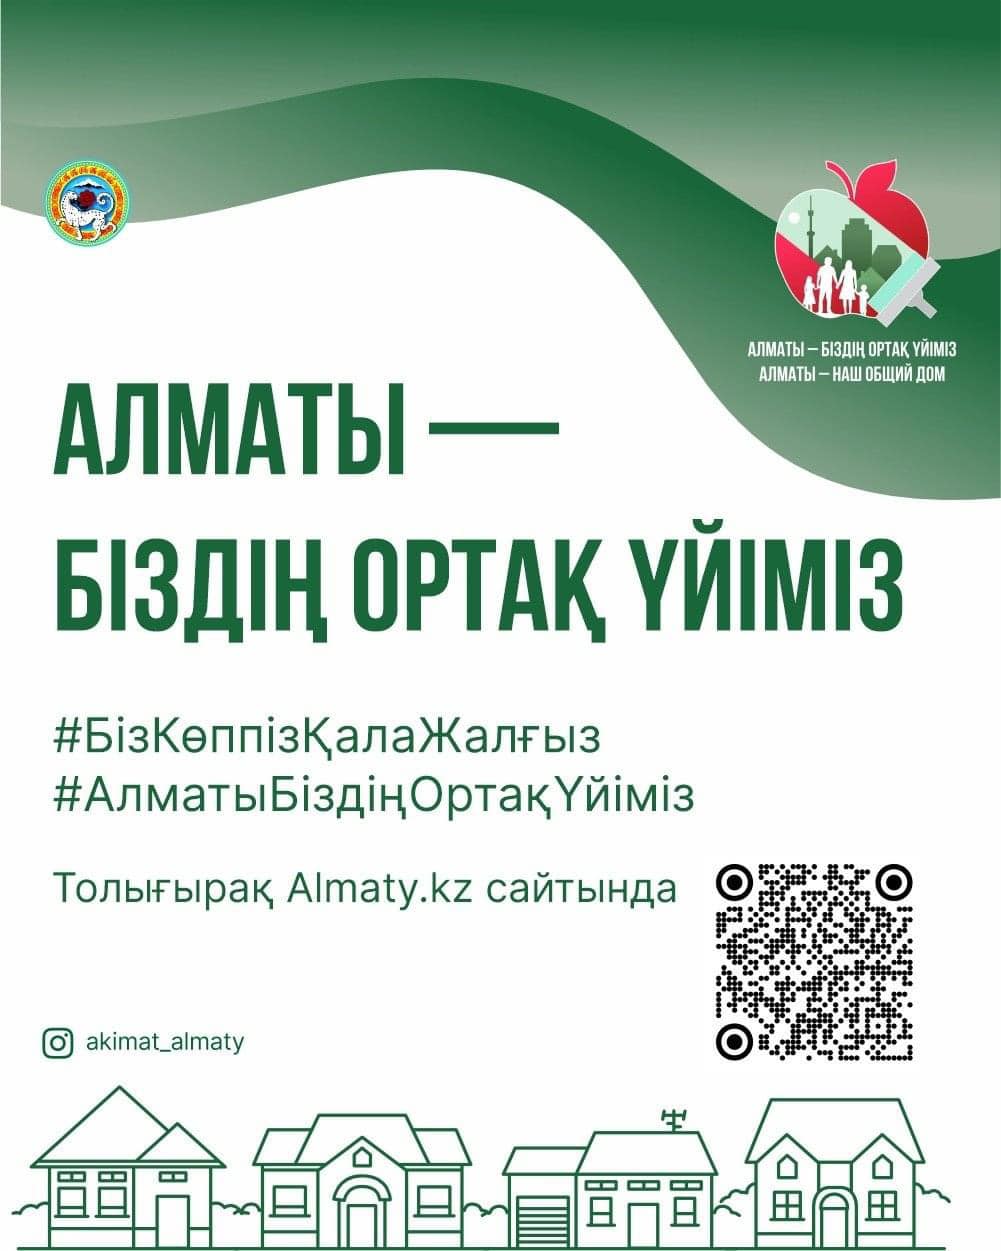 С 8 апреля по 8 мая в городе пройдет кампания «Алматы — наш общий дом». 